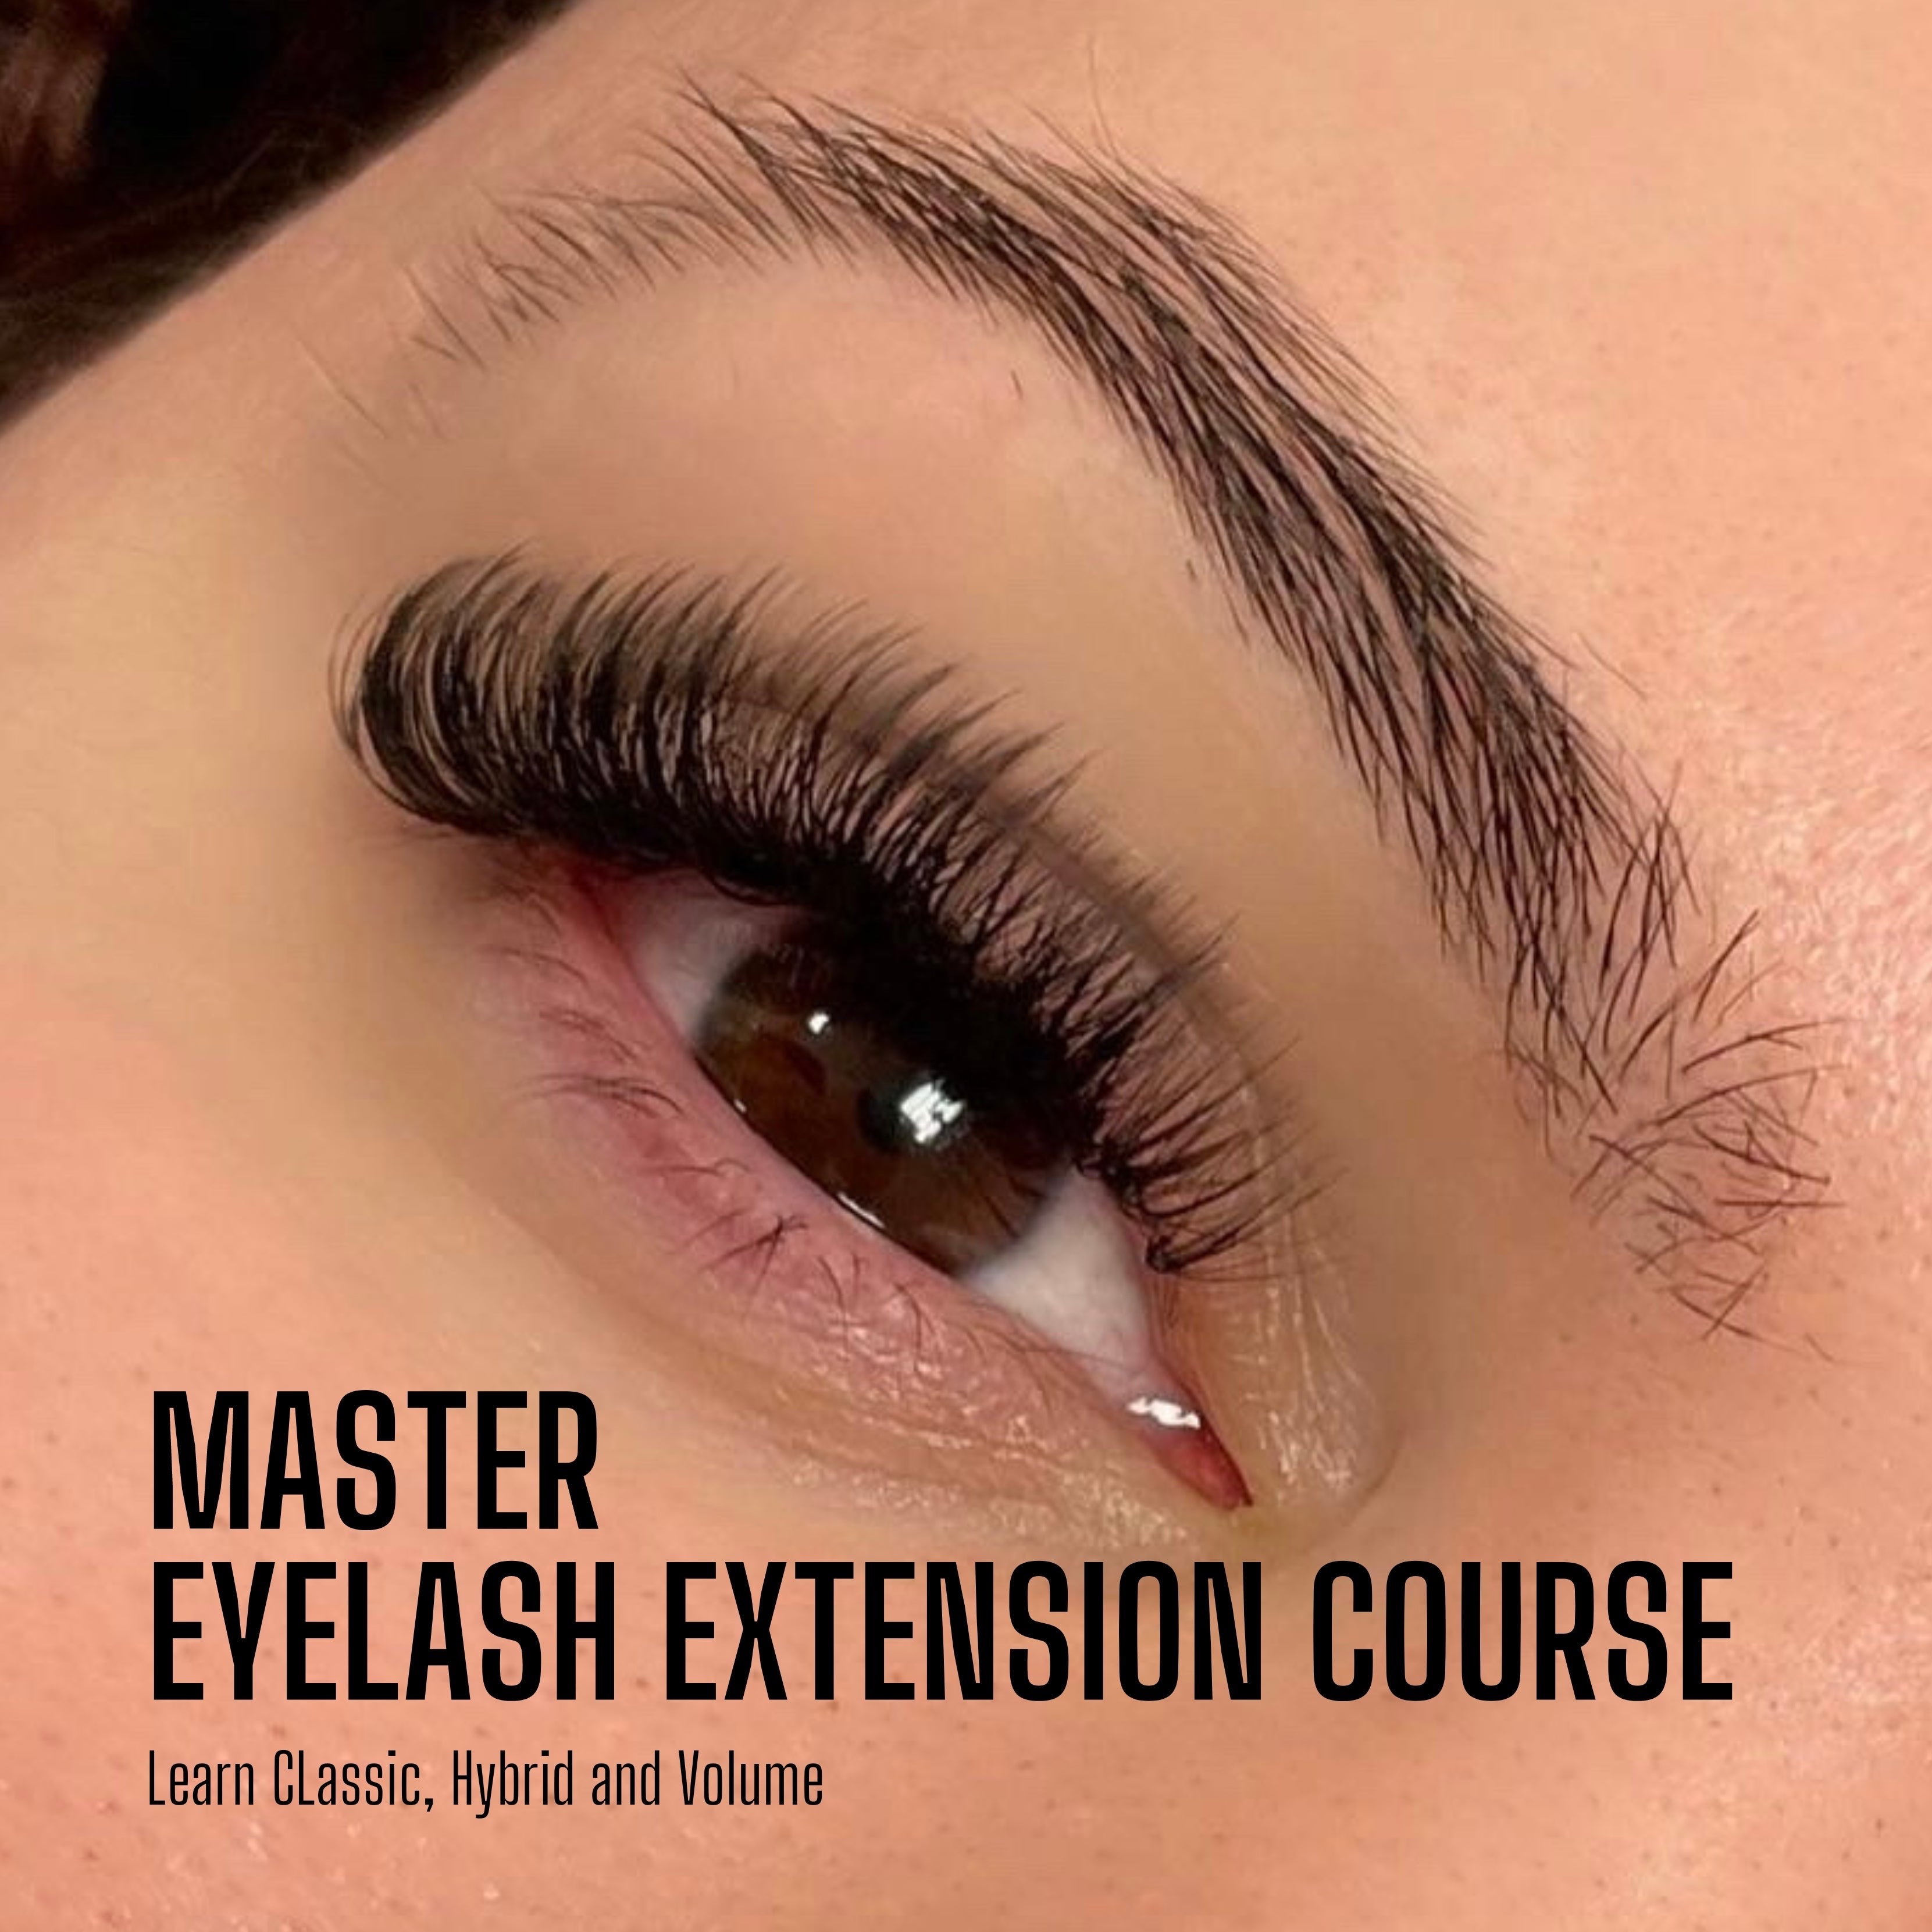 Master Eyelash Extension Course - No Starter Kit